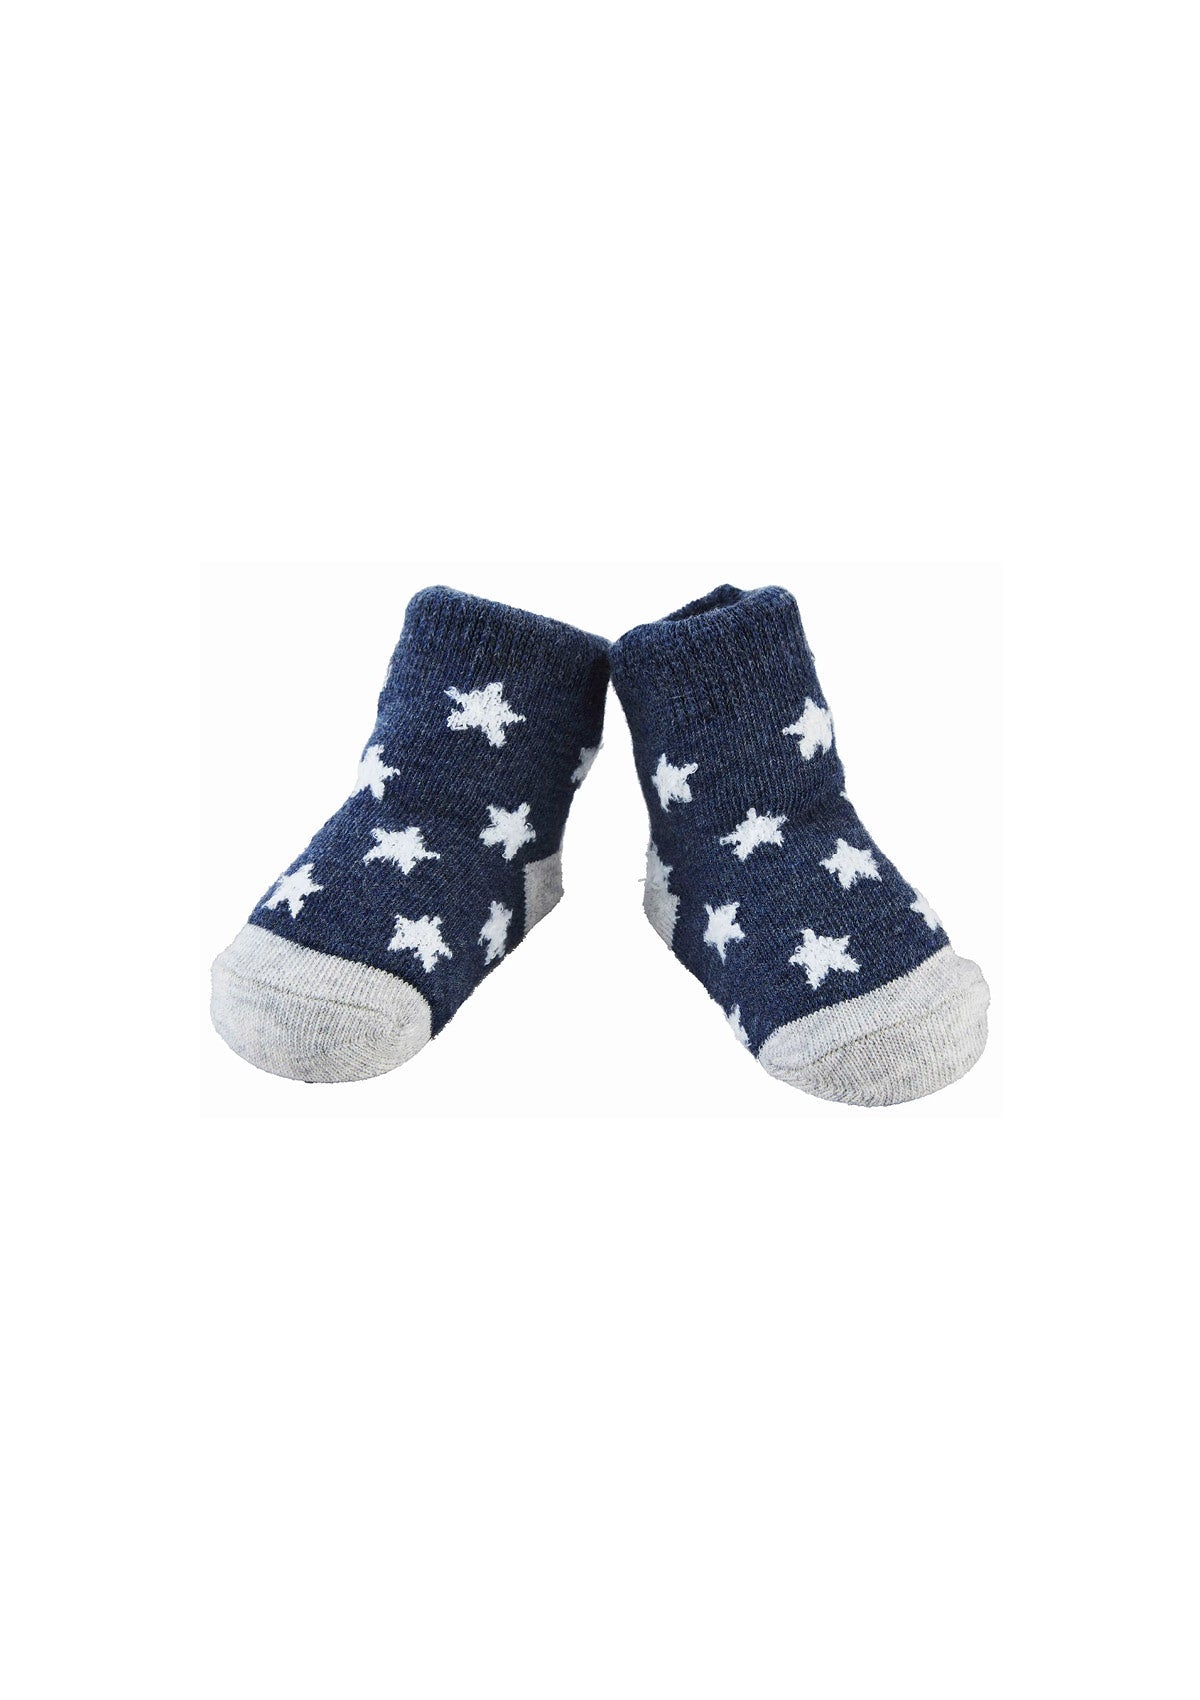 Navy Star Baby Socks -Mud Pie- Ruby Jane-